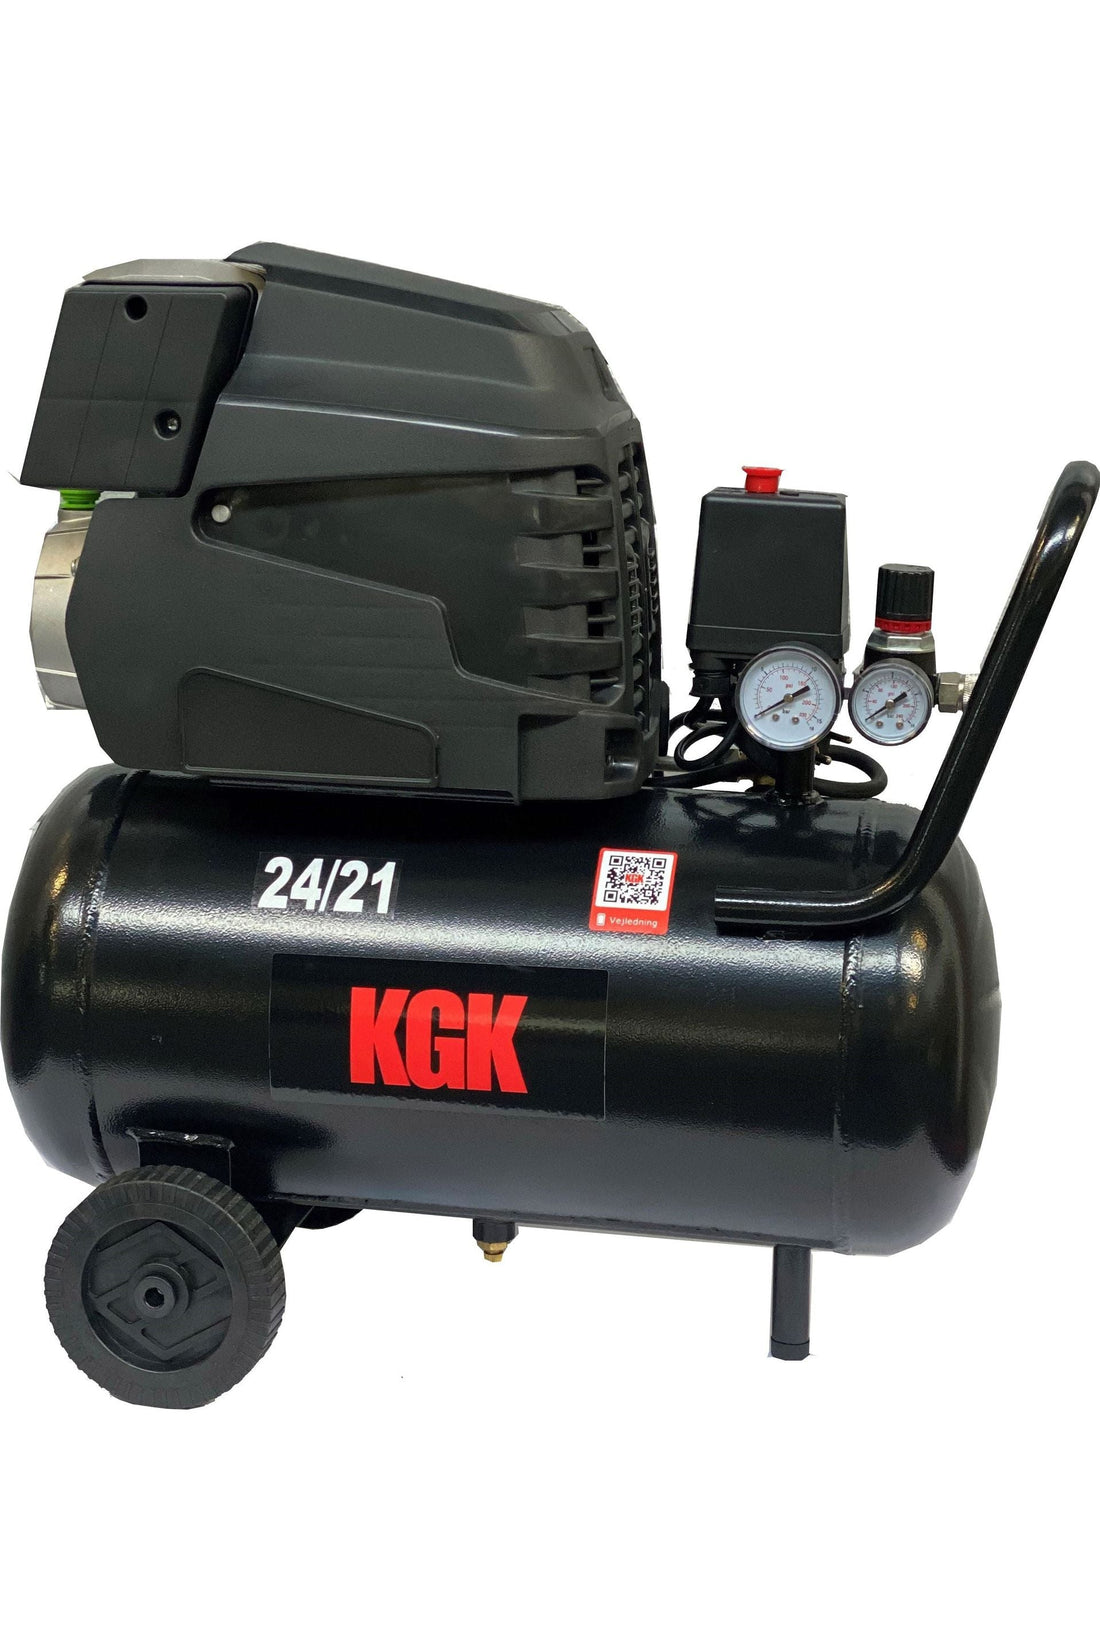 KGK - Kompressor 24/21 - AV-Larsen